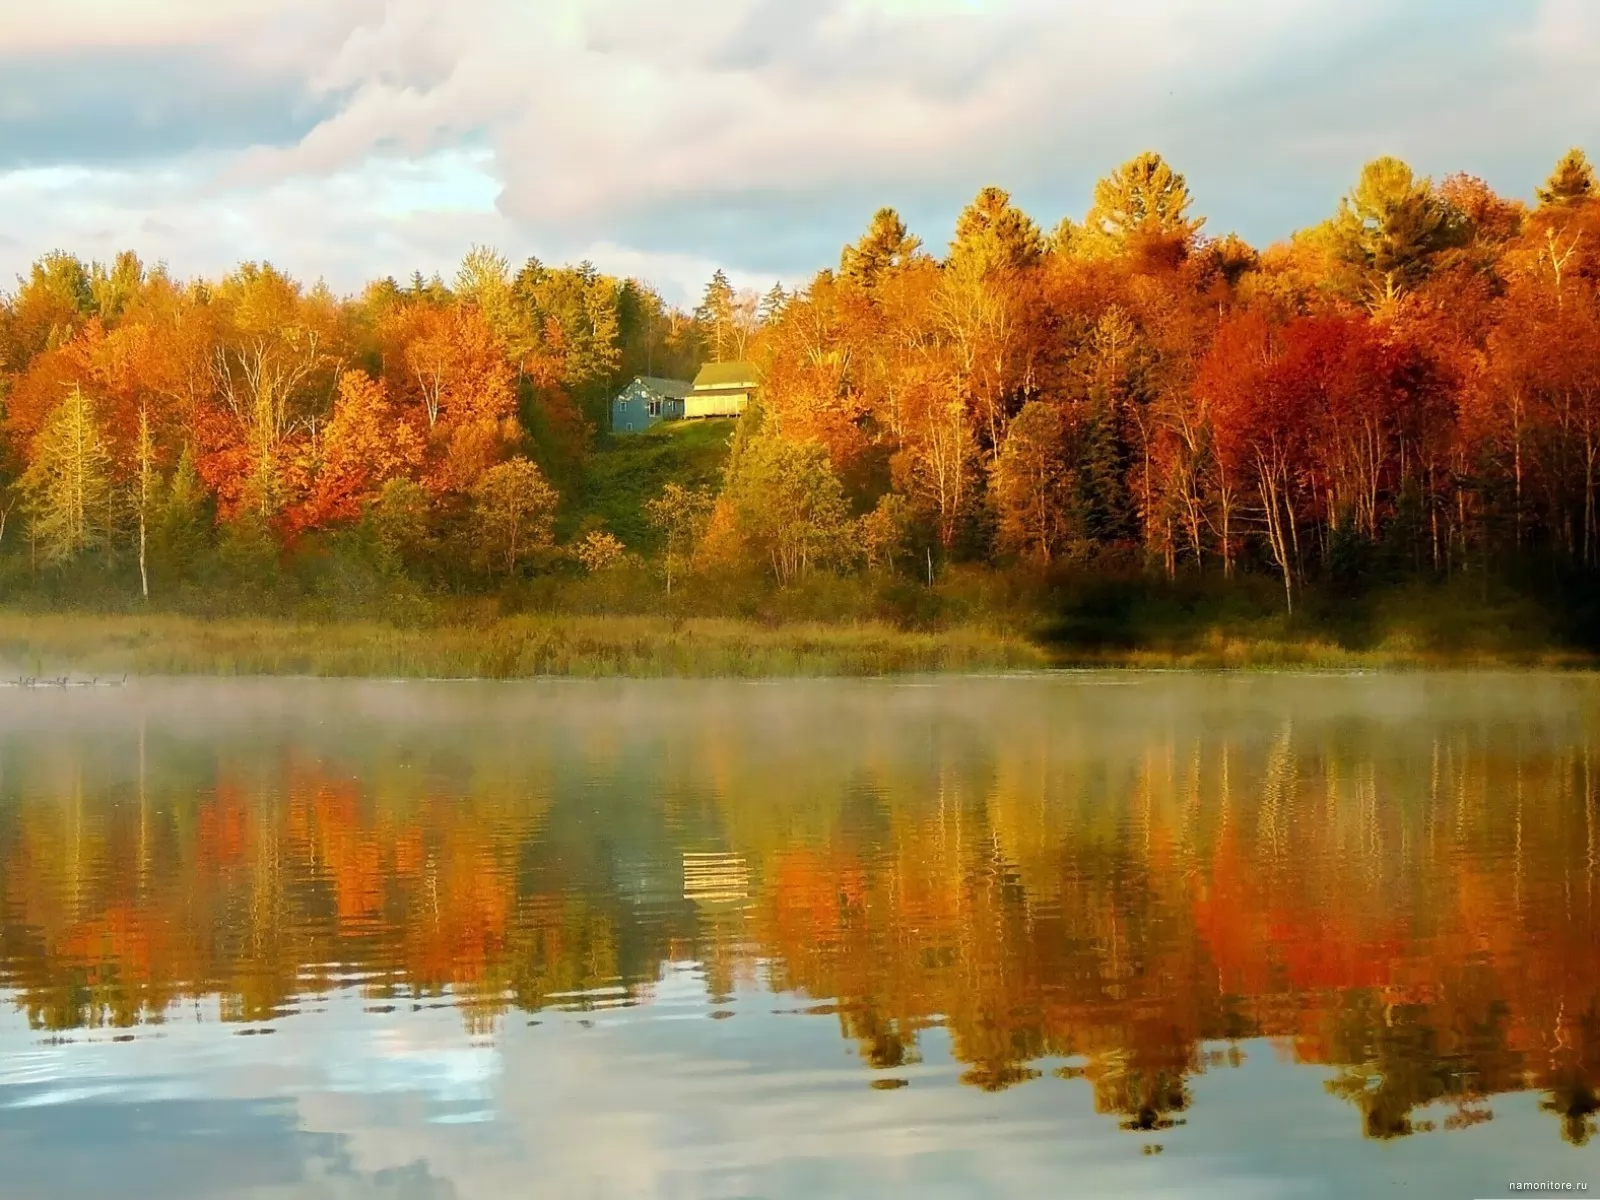 Осенние пейзажи осени. Осенний пейзаж. Осень озеро. Осенний лес с отражением в воде. Отражение осенних деревьев в воде.